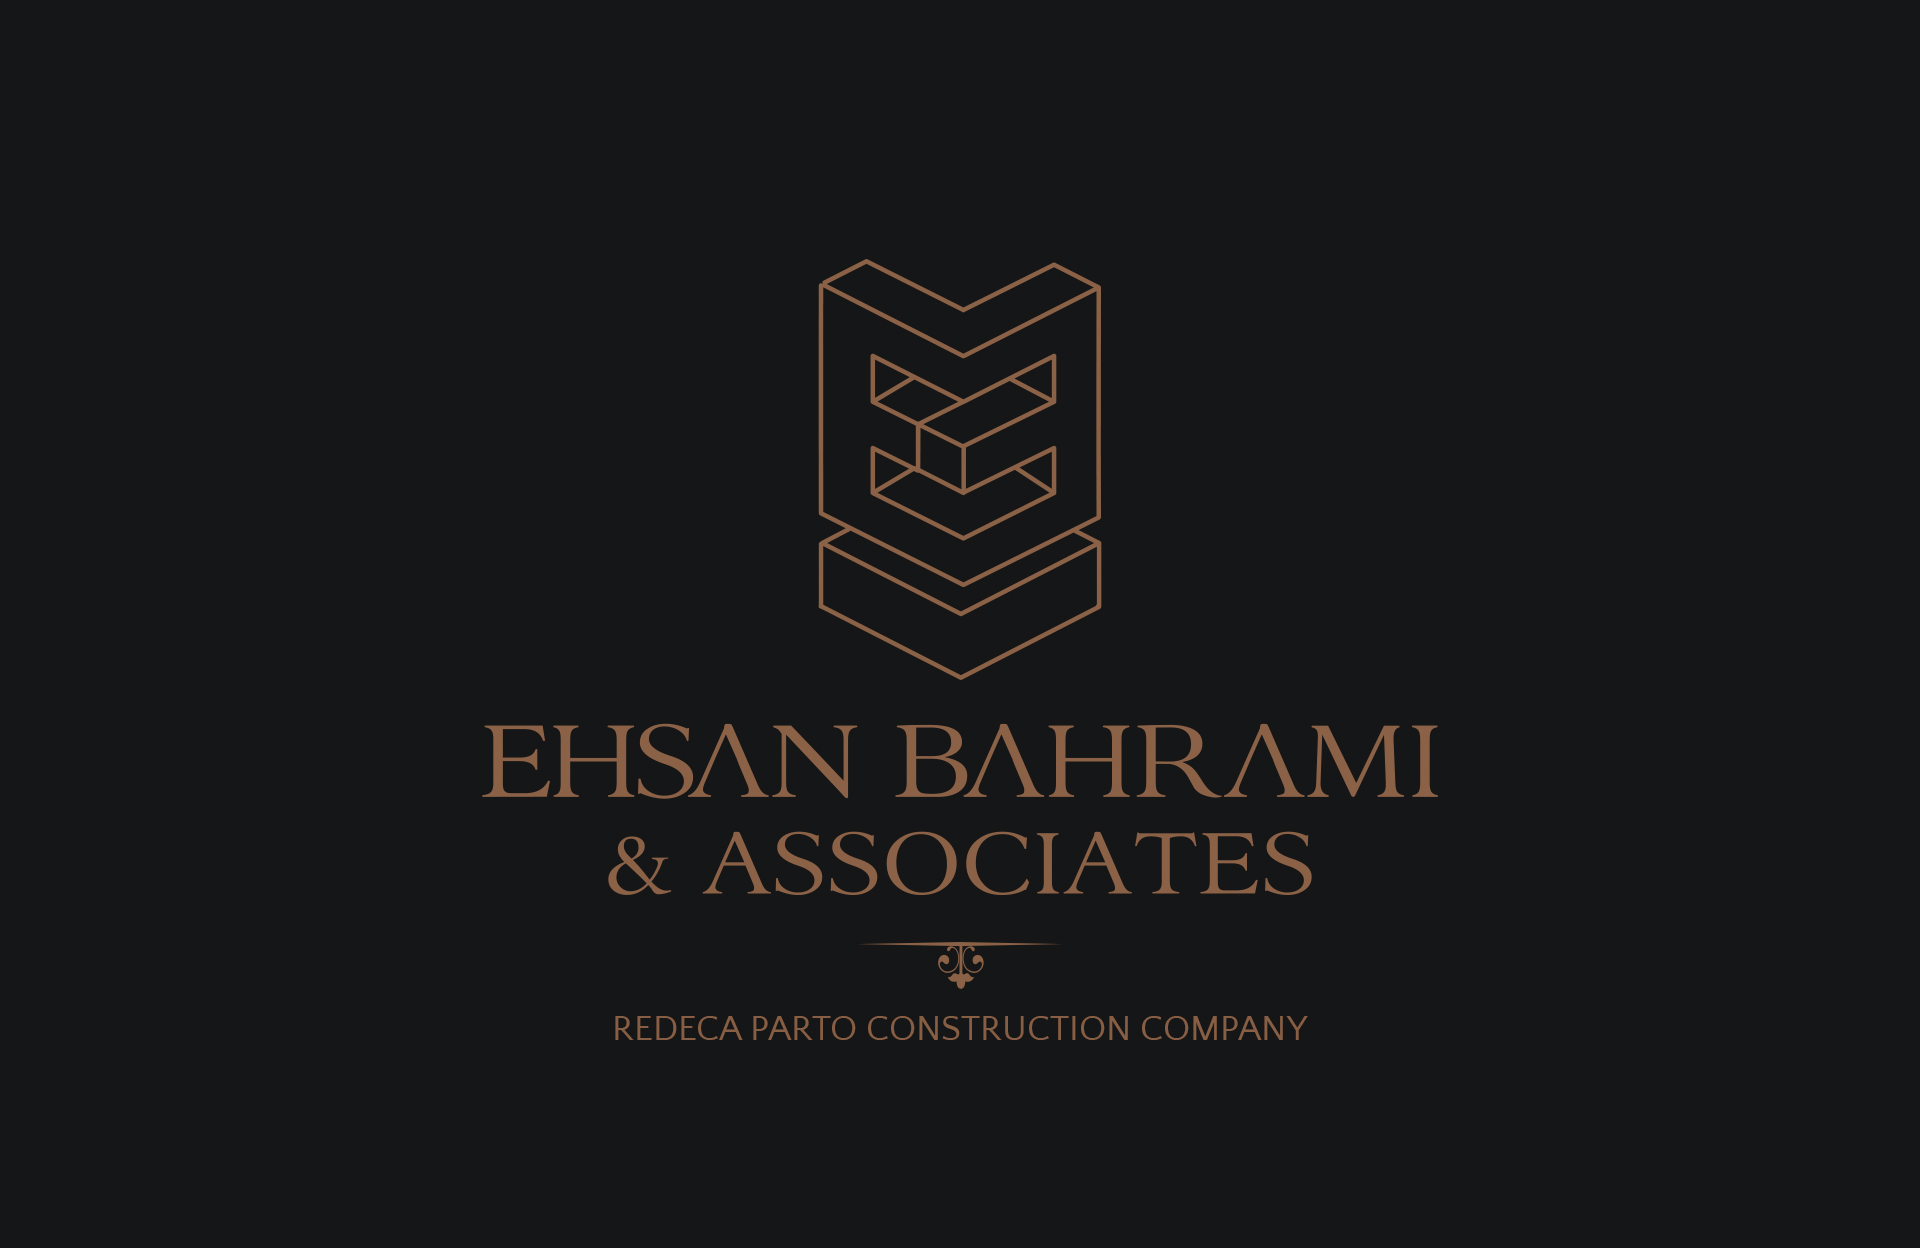 Ehsan Bahrami & Associates REBECA PARTO CONSTRUCTION COMPANY